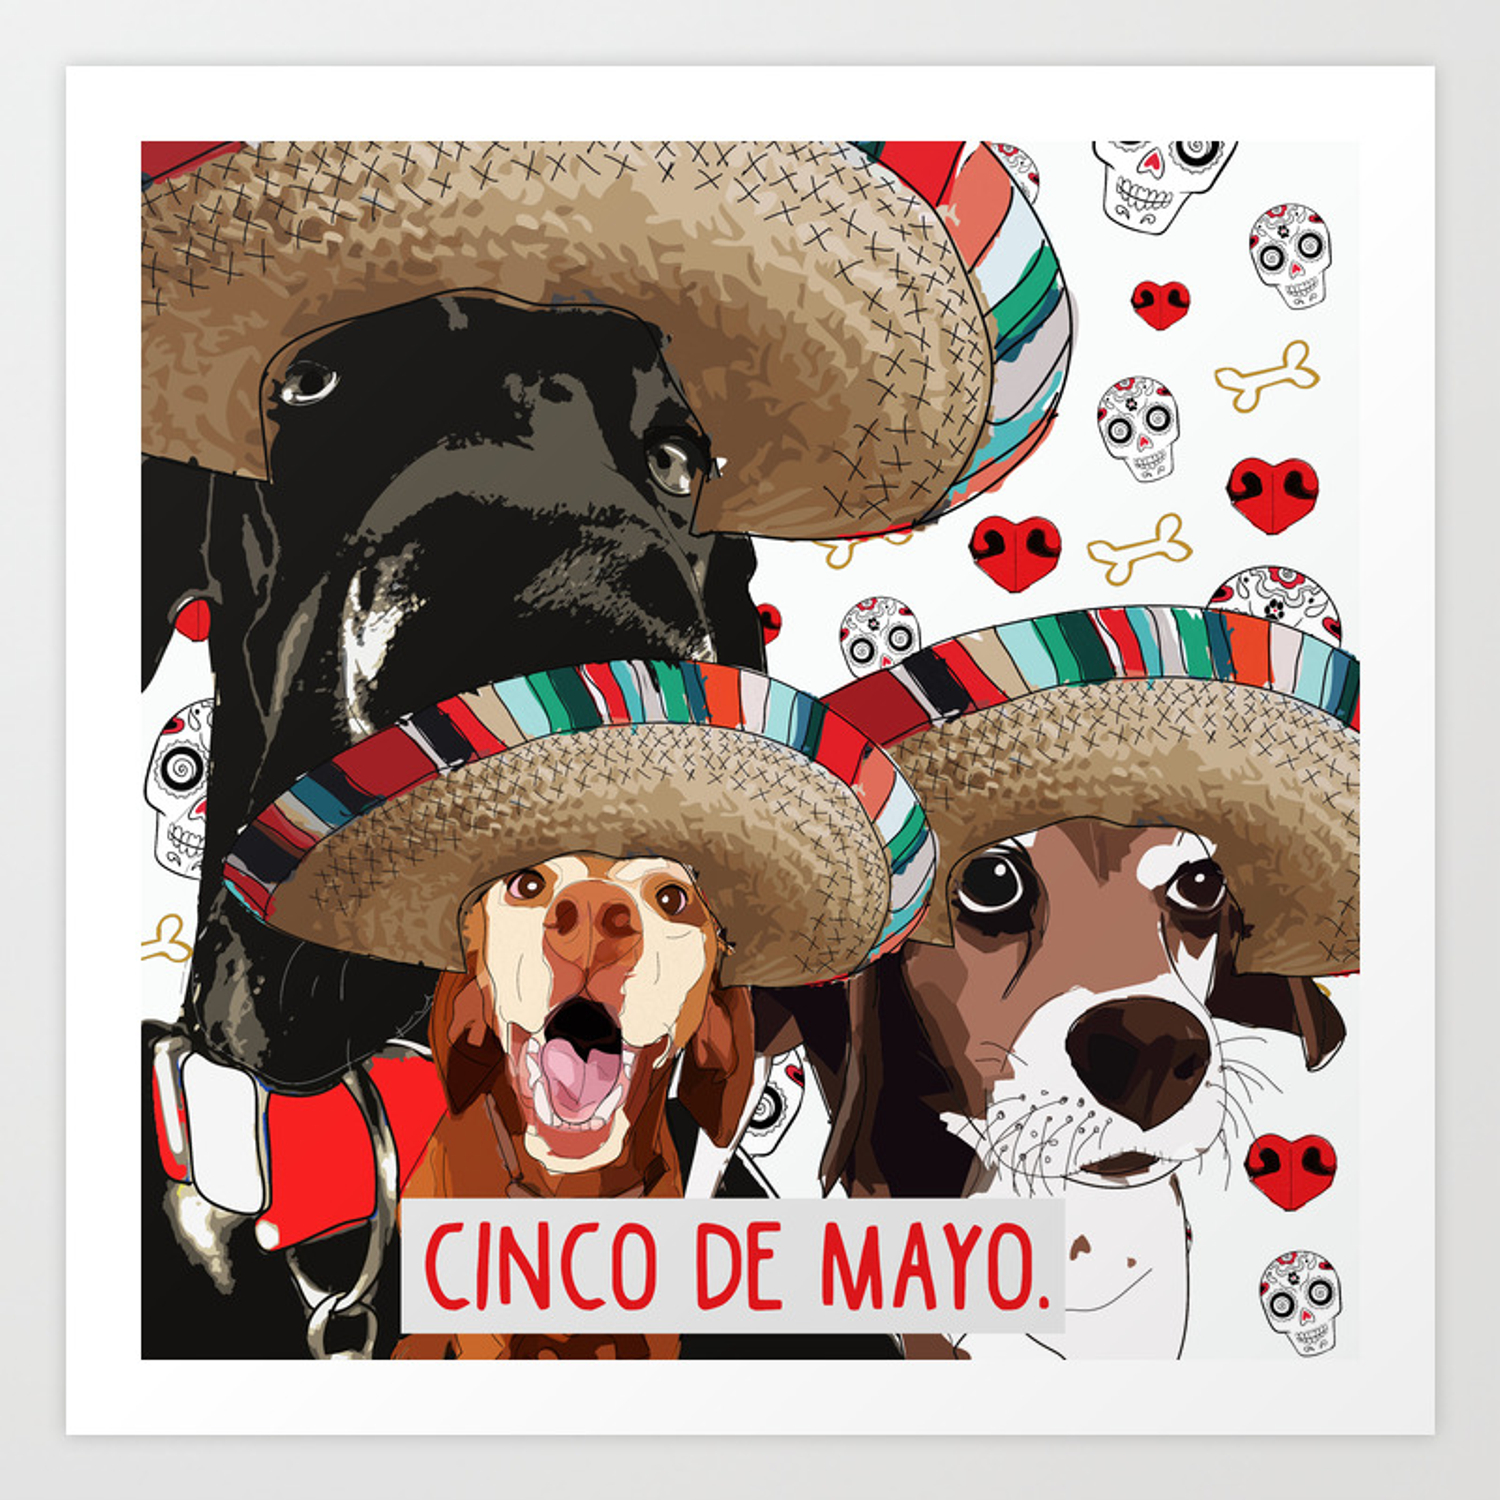 Mẫu thiết kế trên Sticker dành cho niche những người yêu chó nhân ngày Cinco de Mayo